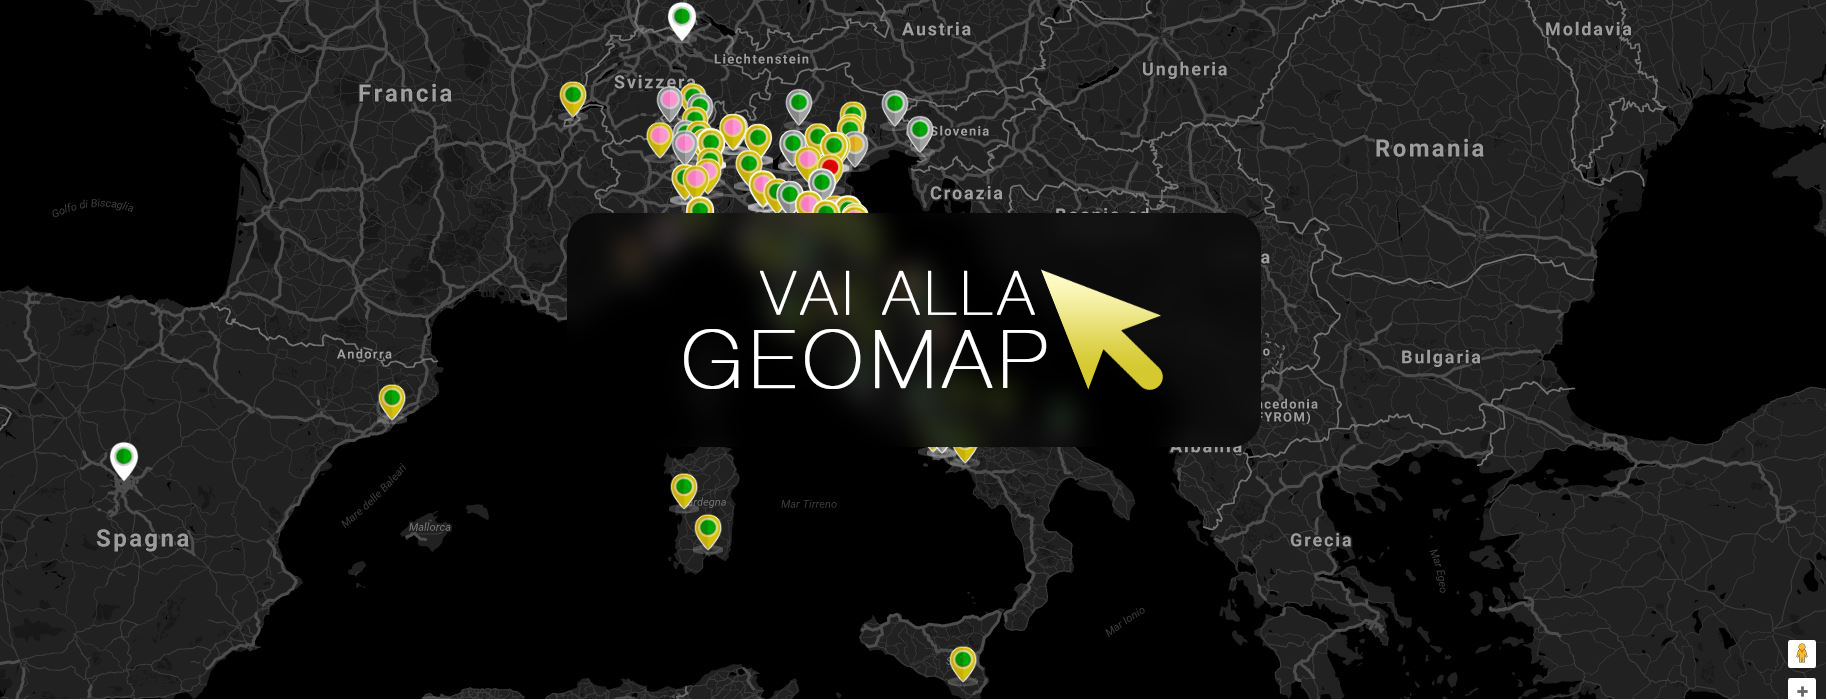 Guarda gli annunci a San Giuliano nella mappa intervattiva